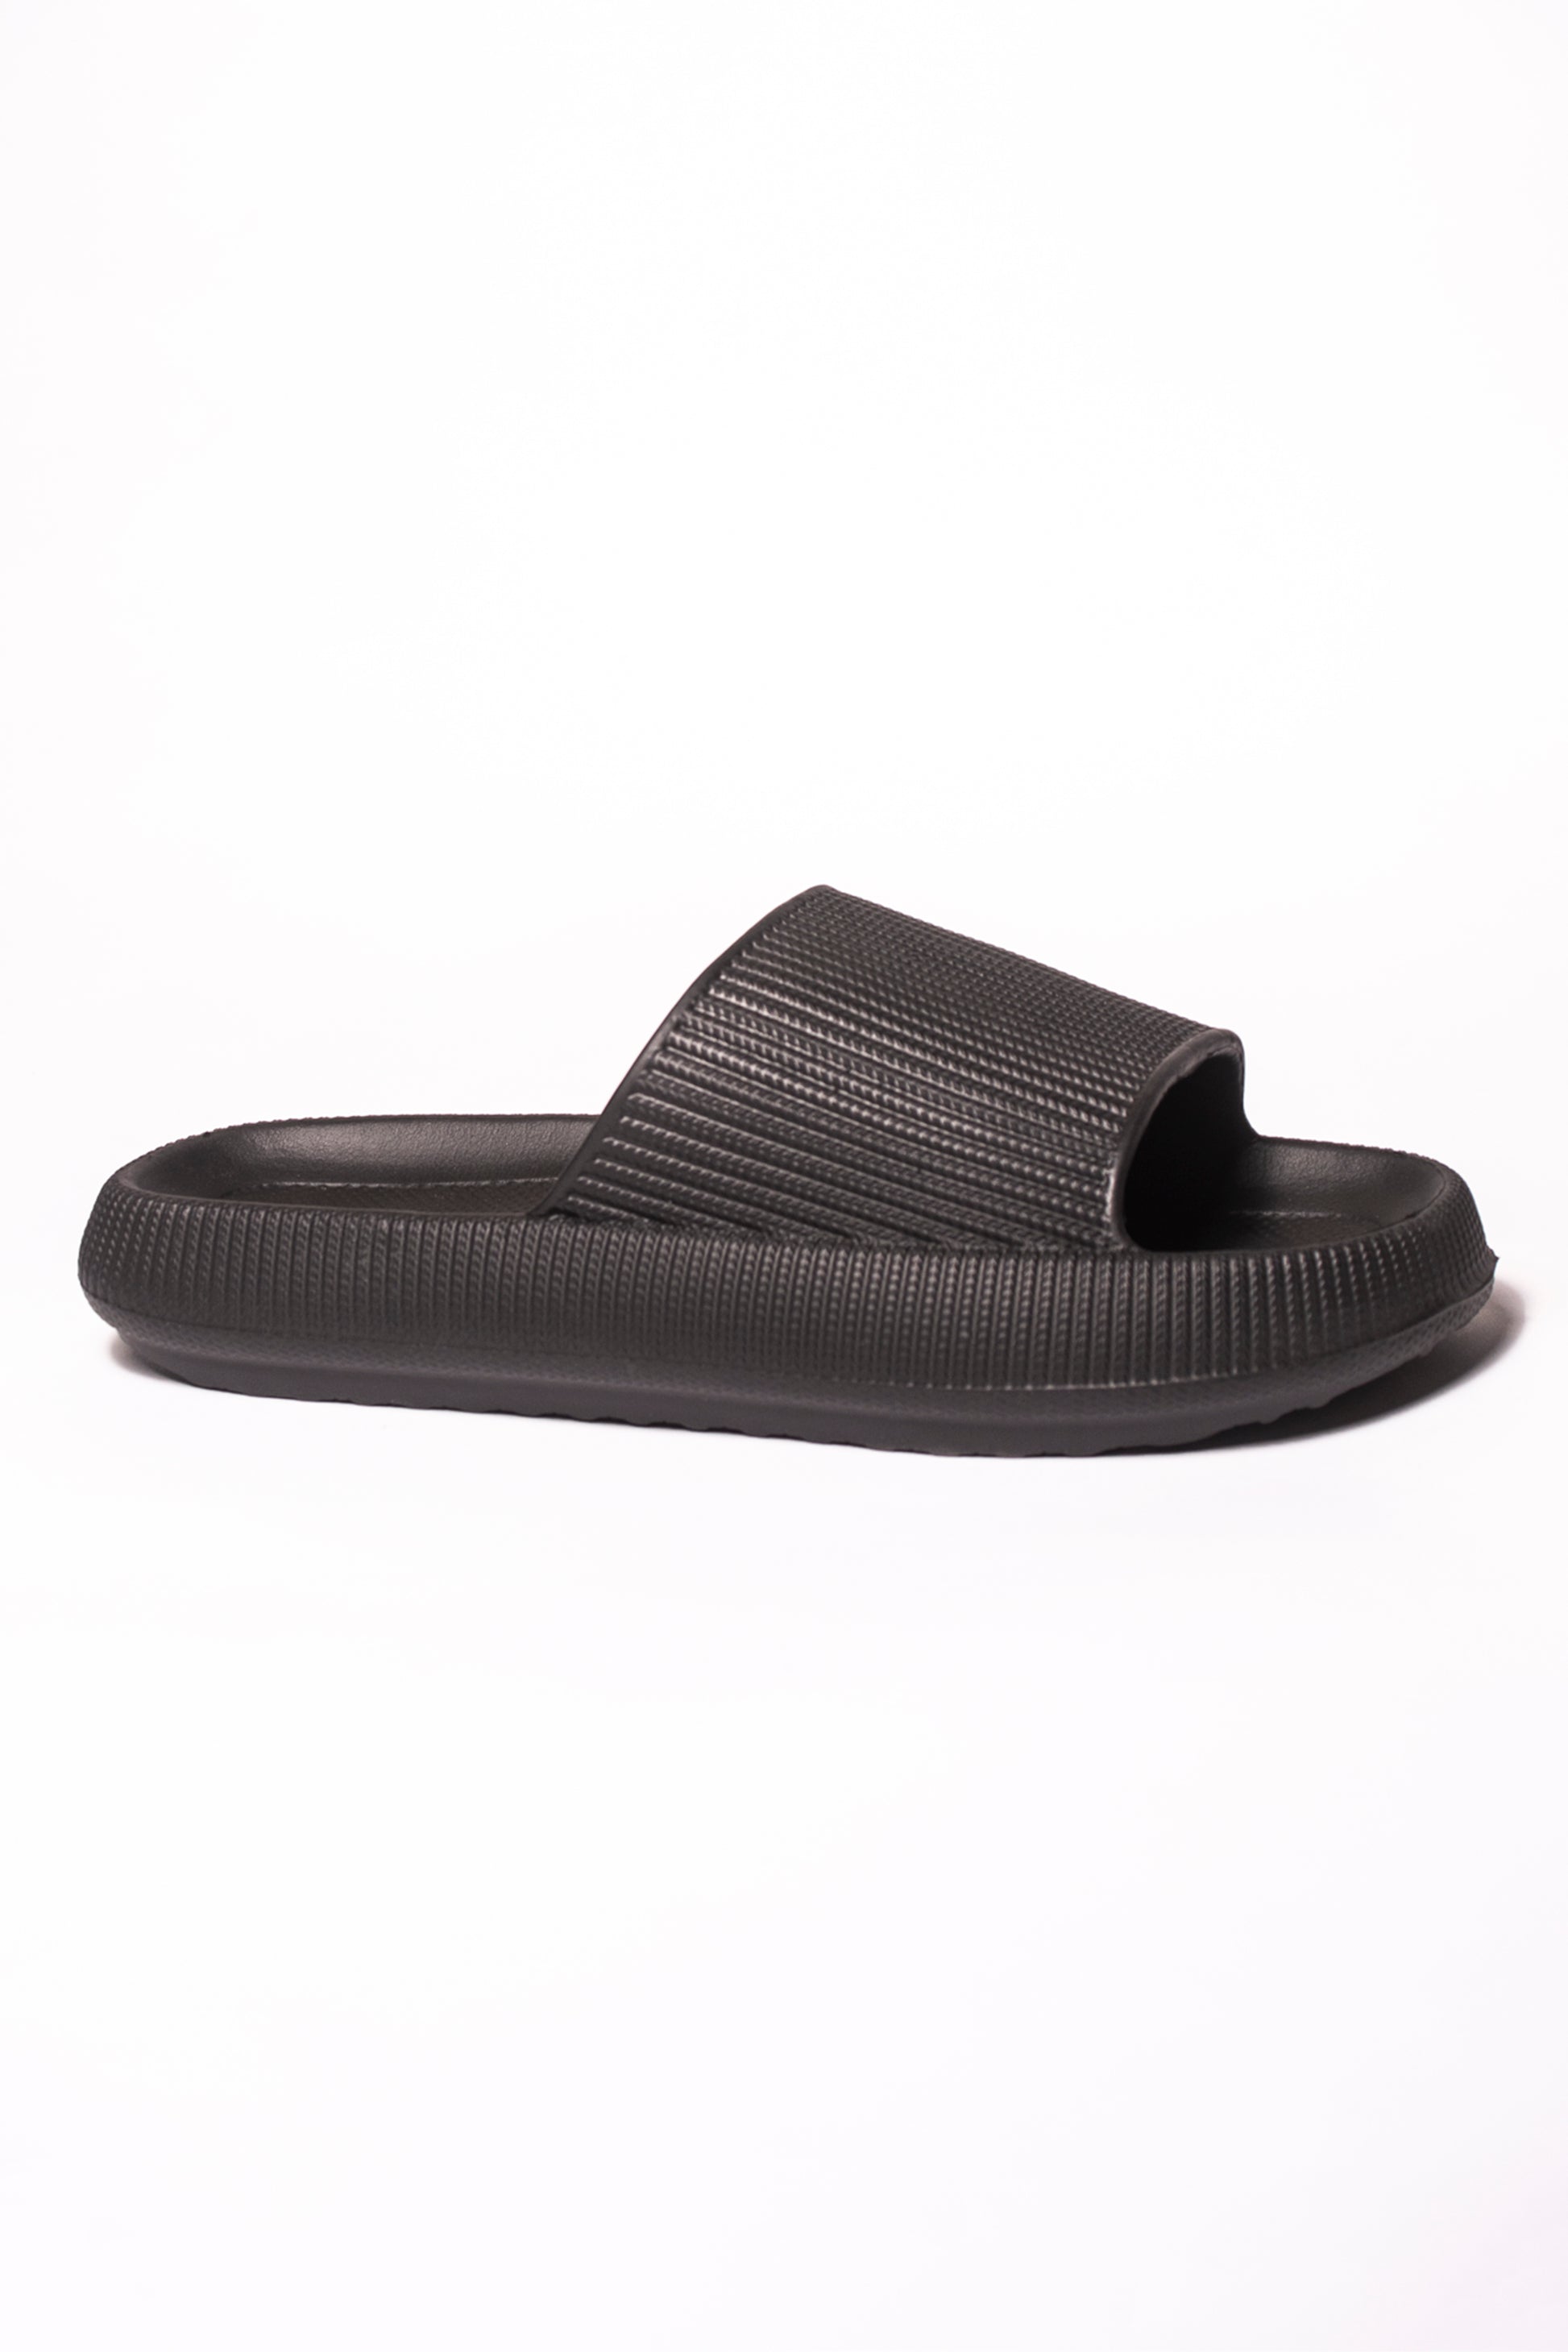 Kendal Black Eva Mule – Kenyons Footwear